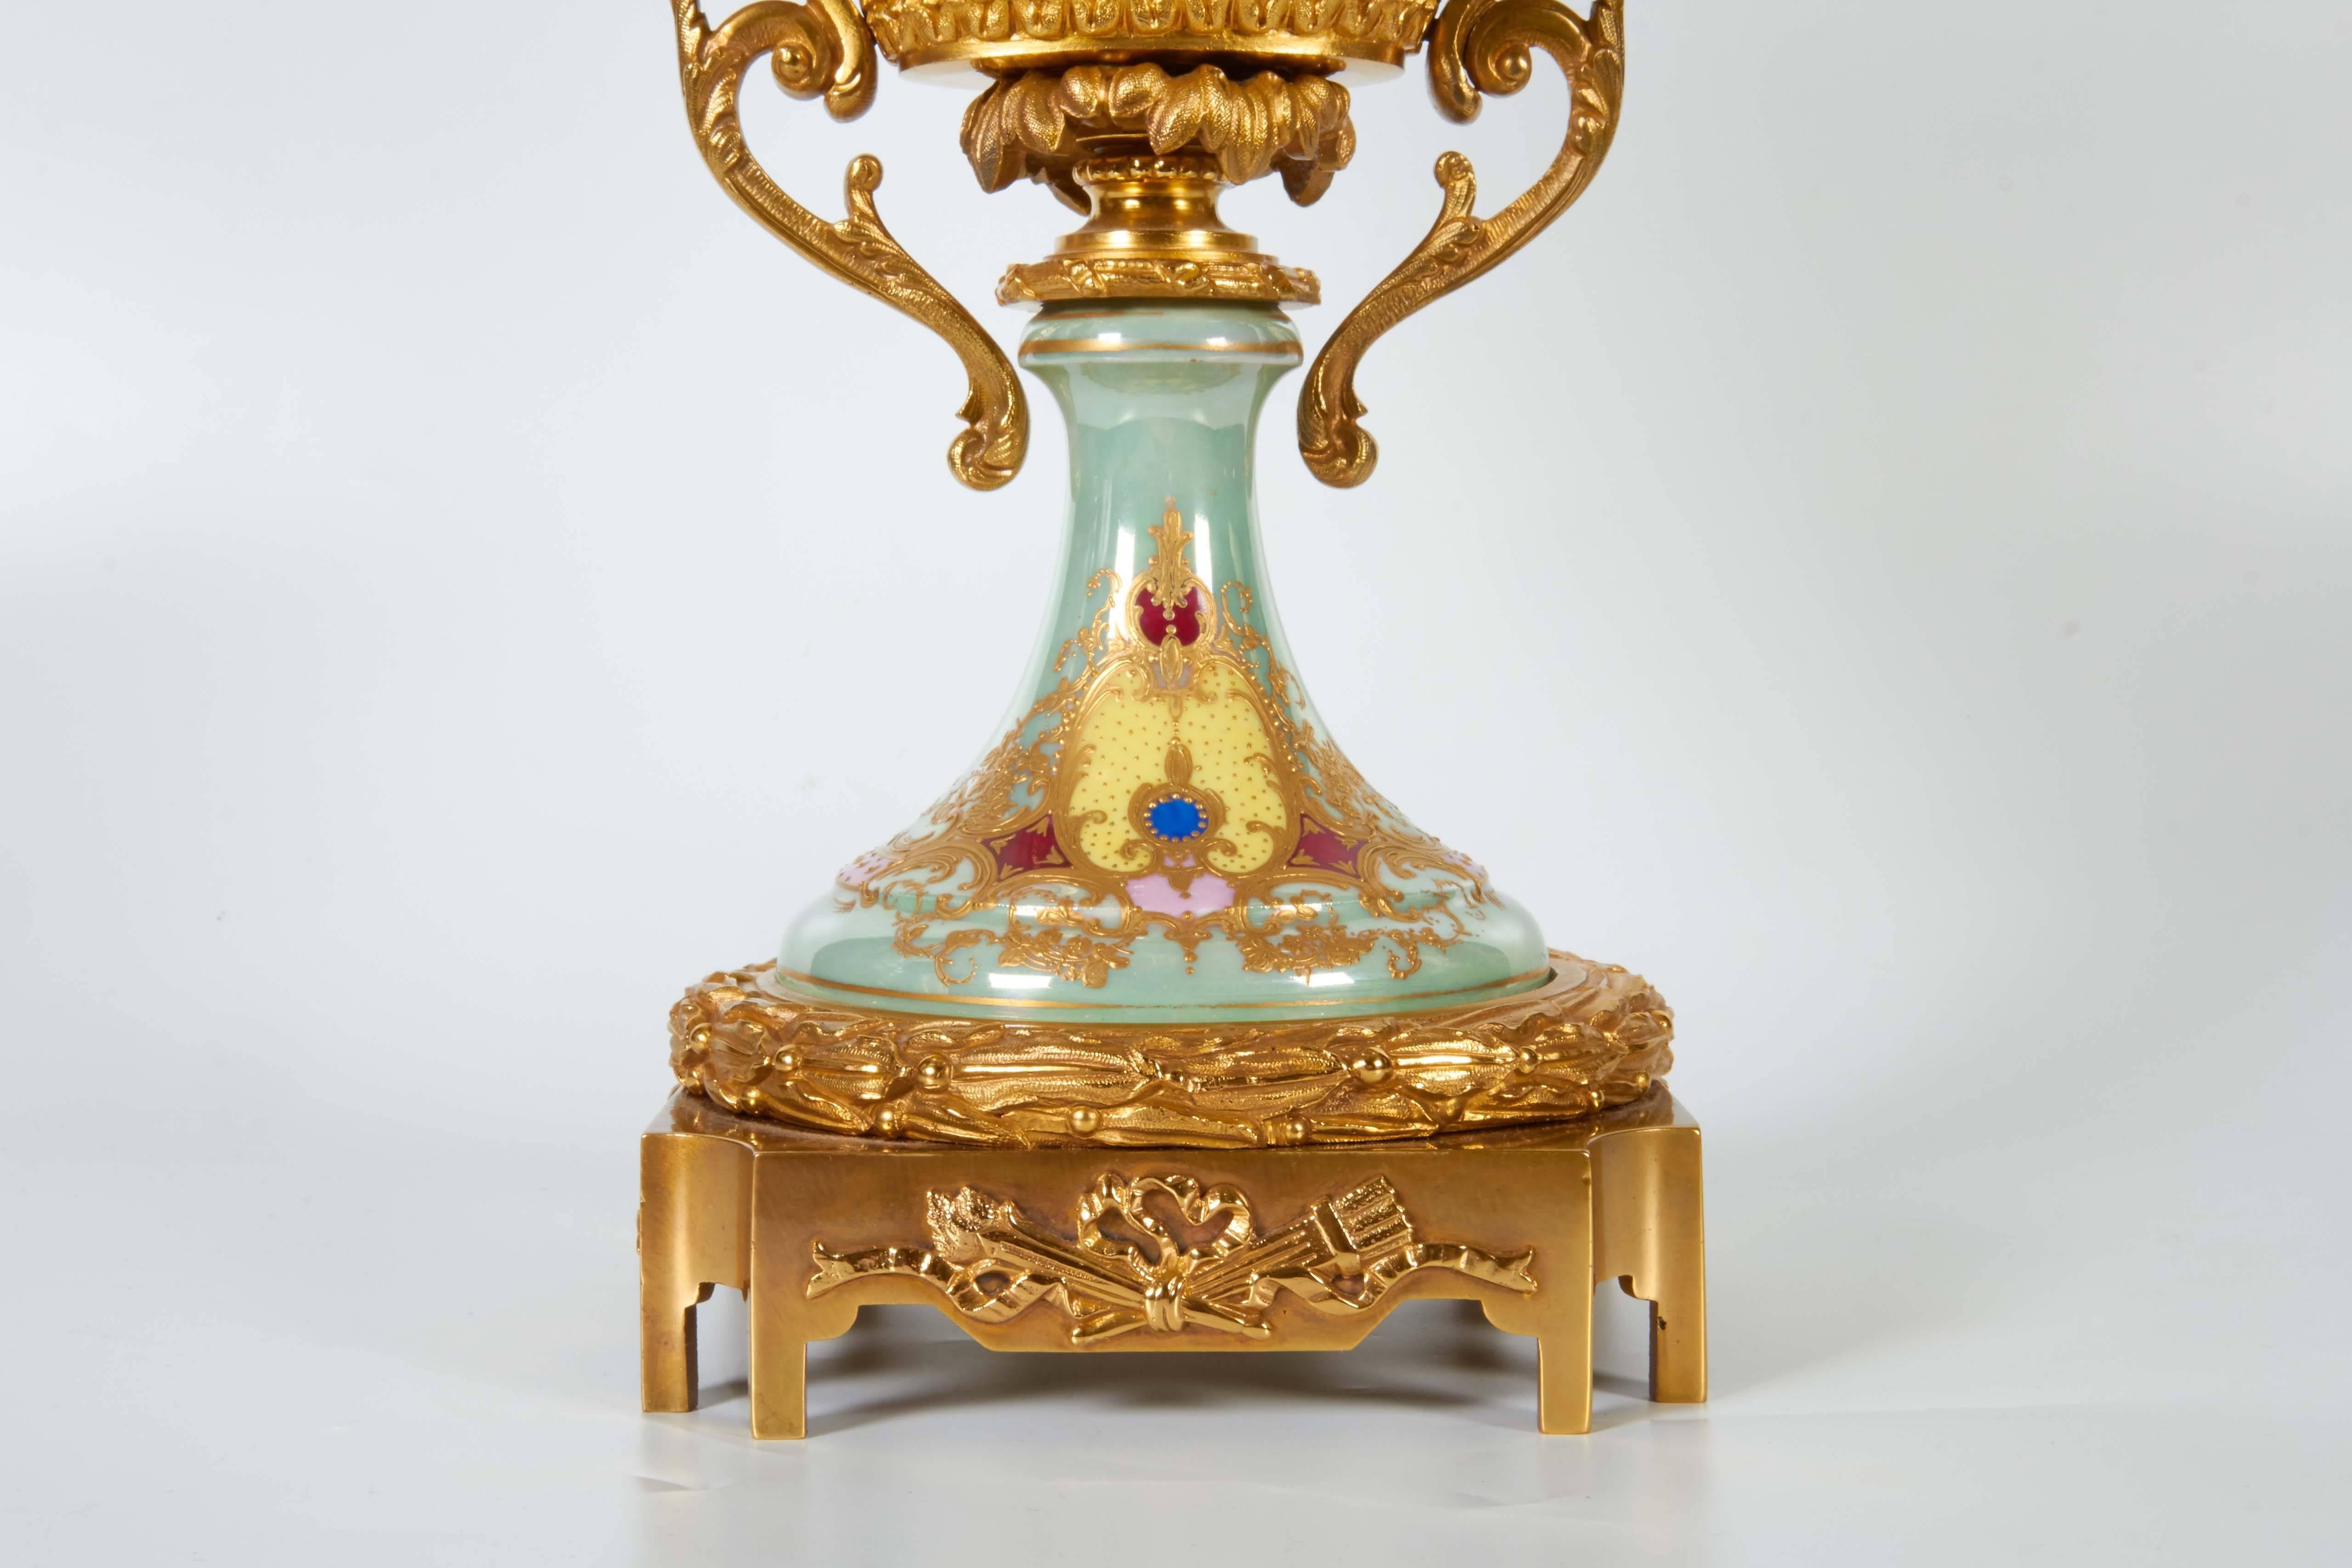 Centre de table de forme ovale en porcelaine de Sèvres irisée et monté en bronze doré. La porcelaine de Sèvres irisée de couleur vert jade clair est peinte d'une belle scène représentant une beauté au milieu de cupidons avec des fleurs et des